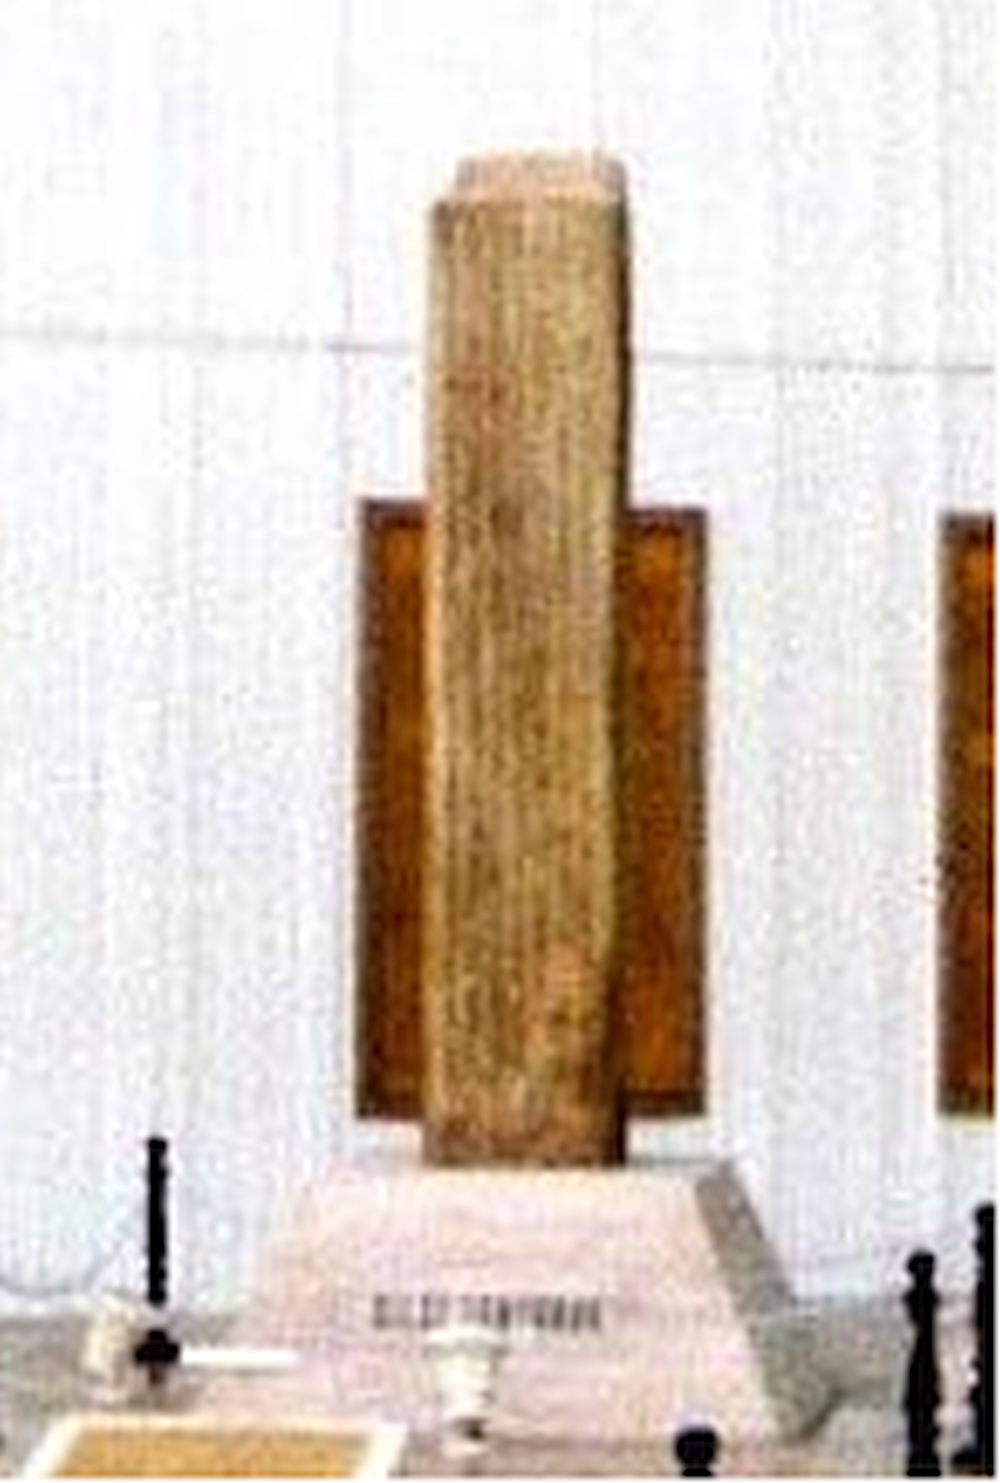 tonyukuk yazıtı orhun yazıtları göktürk kitabesi abideleri yazıtları anıtları anıtı heykeli heykel yaptır siparişi sipariş resimleri resmi